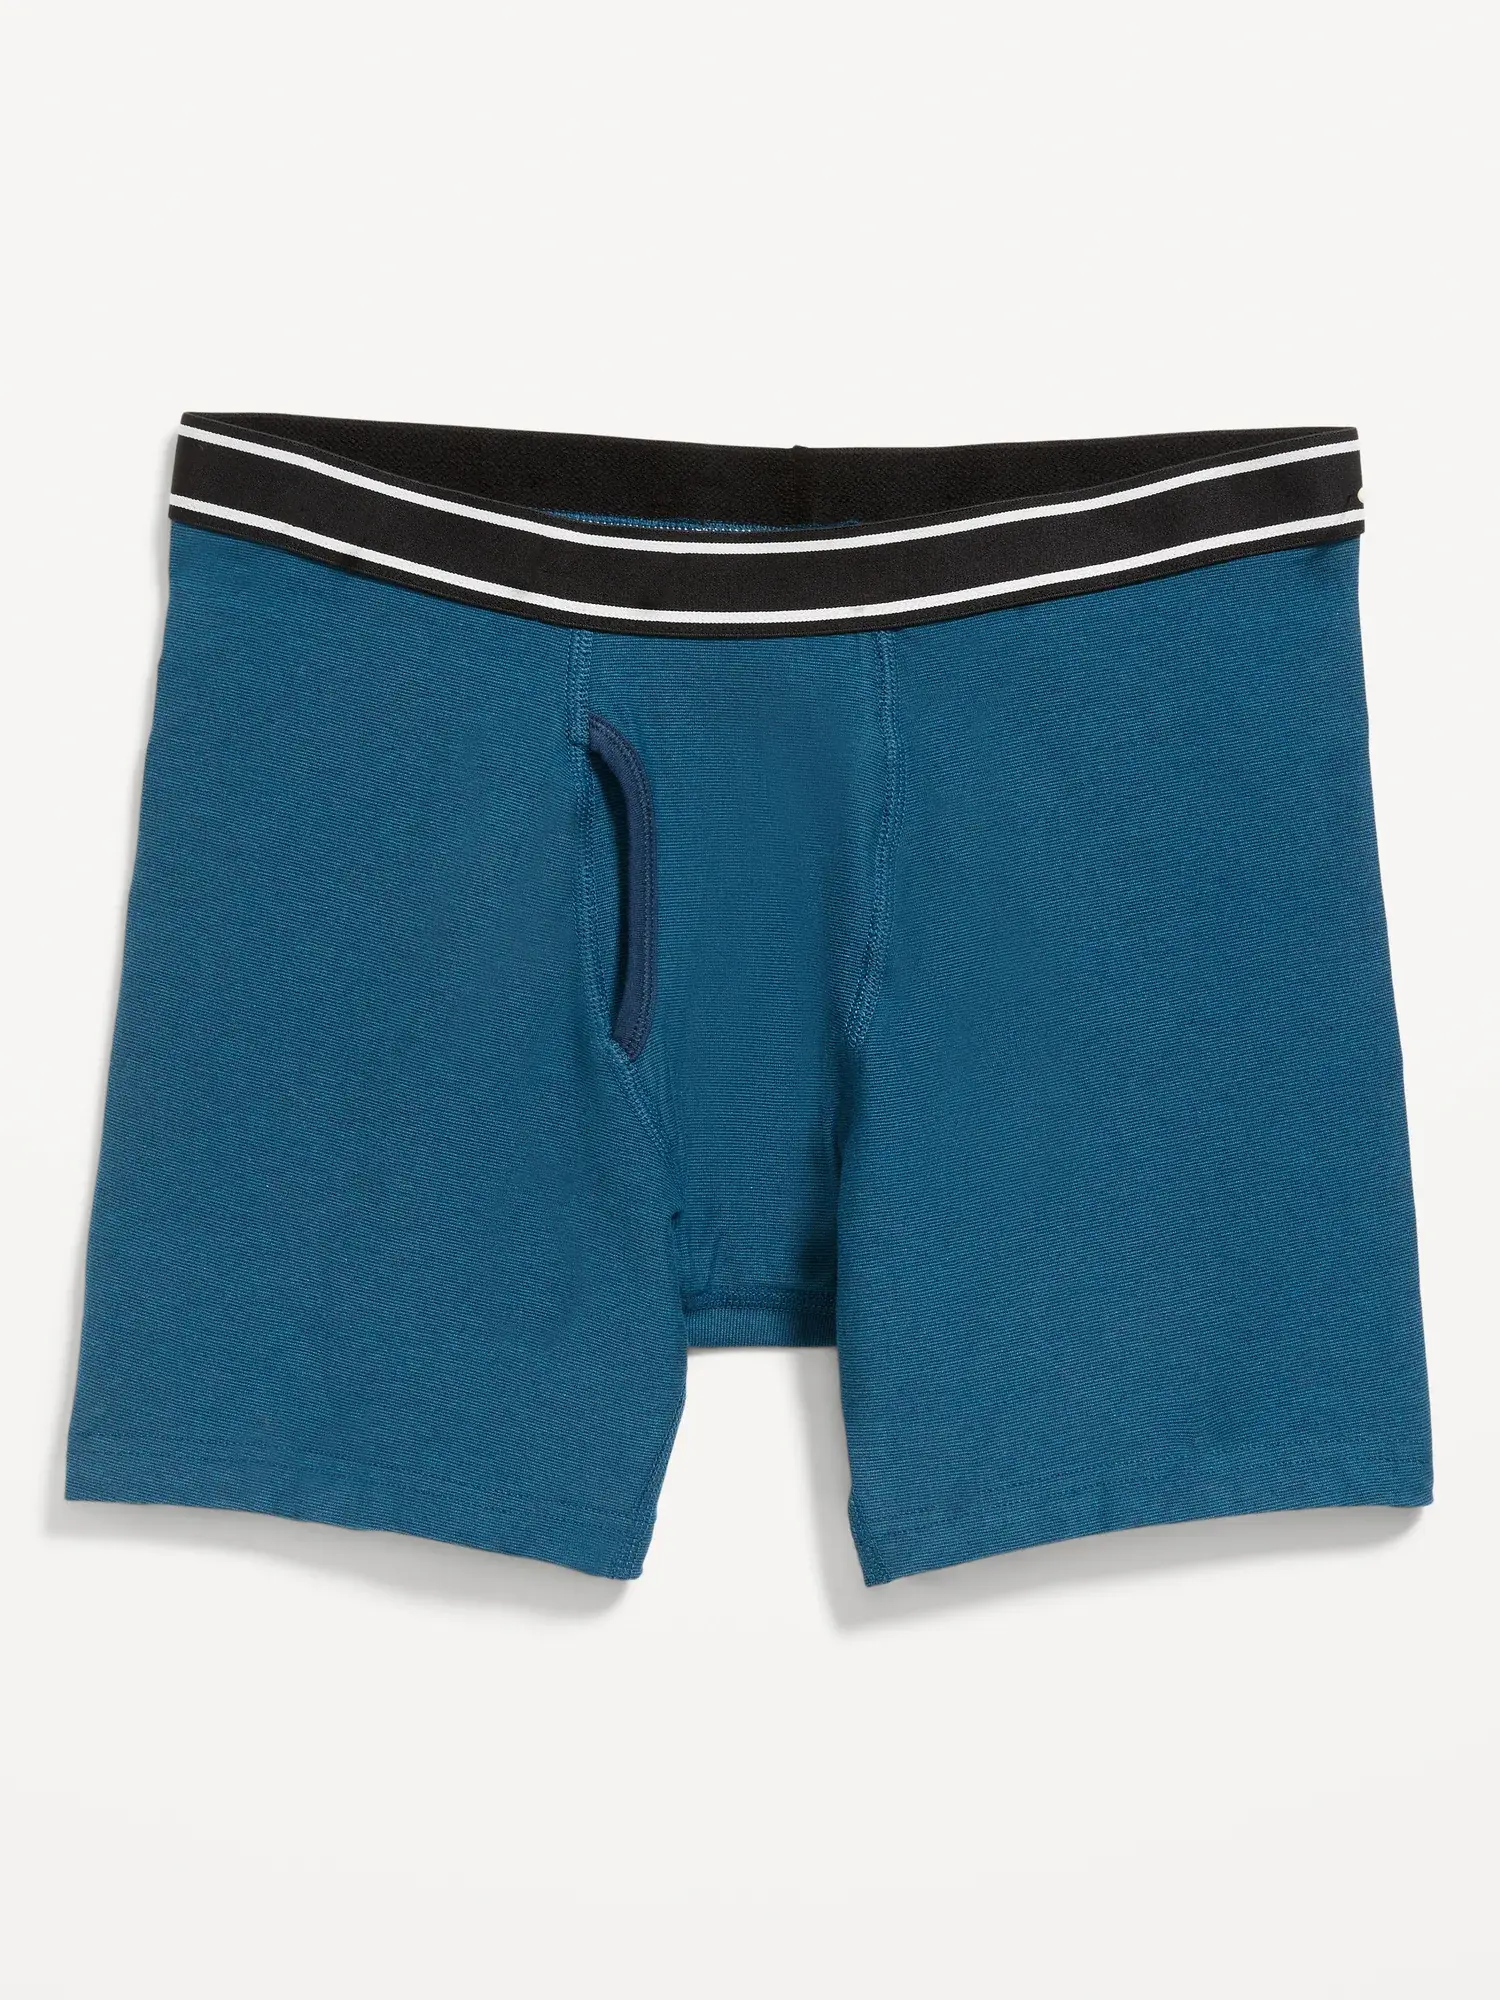 Old Navy Printed Built-In Flex Boxer-Brief Underwear for Men -- 6.25-inch inseam blue. 1